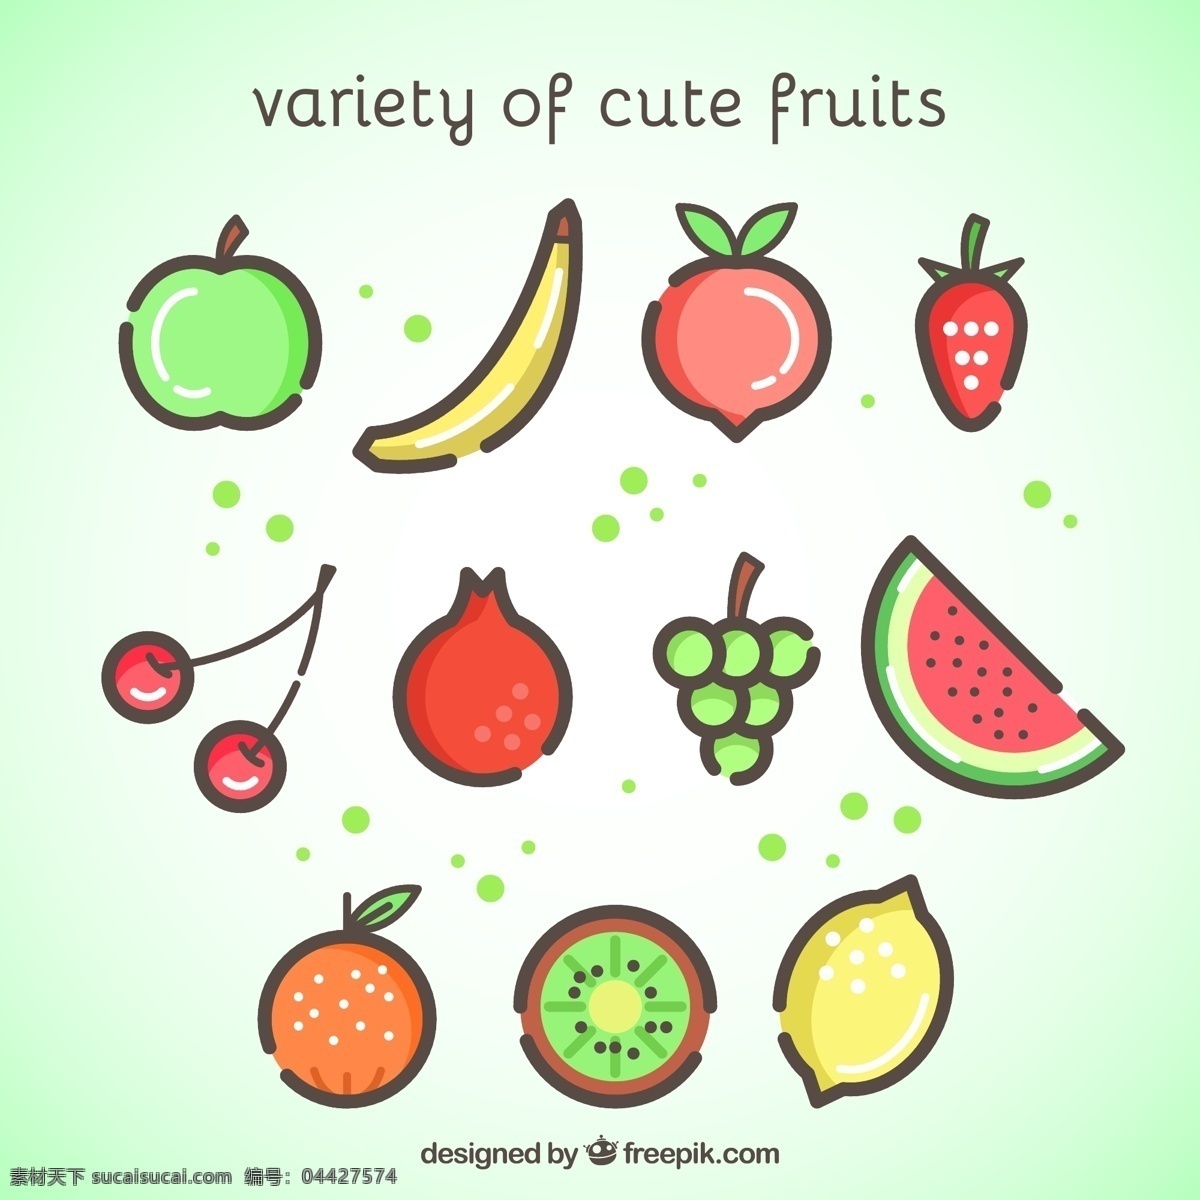 可爱水果设计 可爱 水果 苹果 香蕉 桃子 草莓 樱桃 植物 生物世界